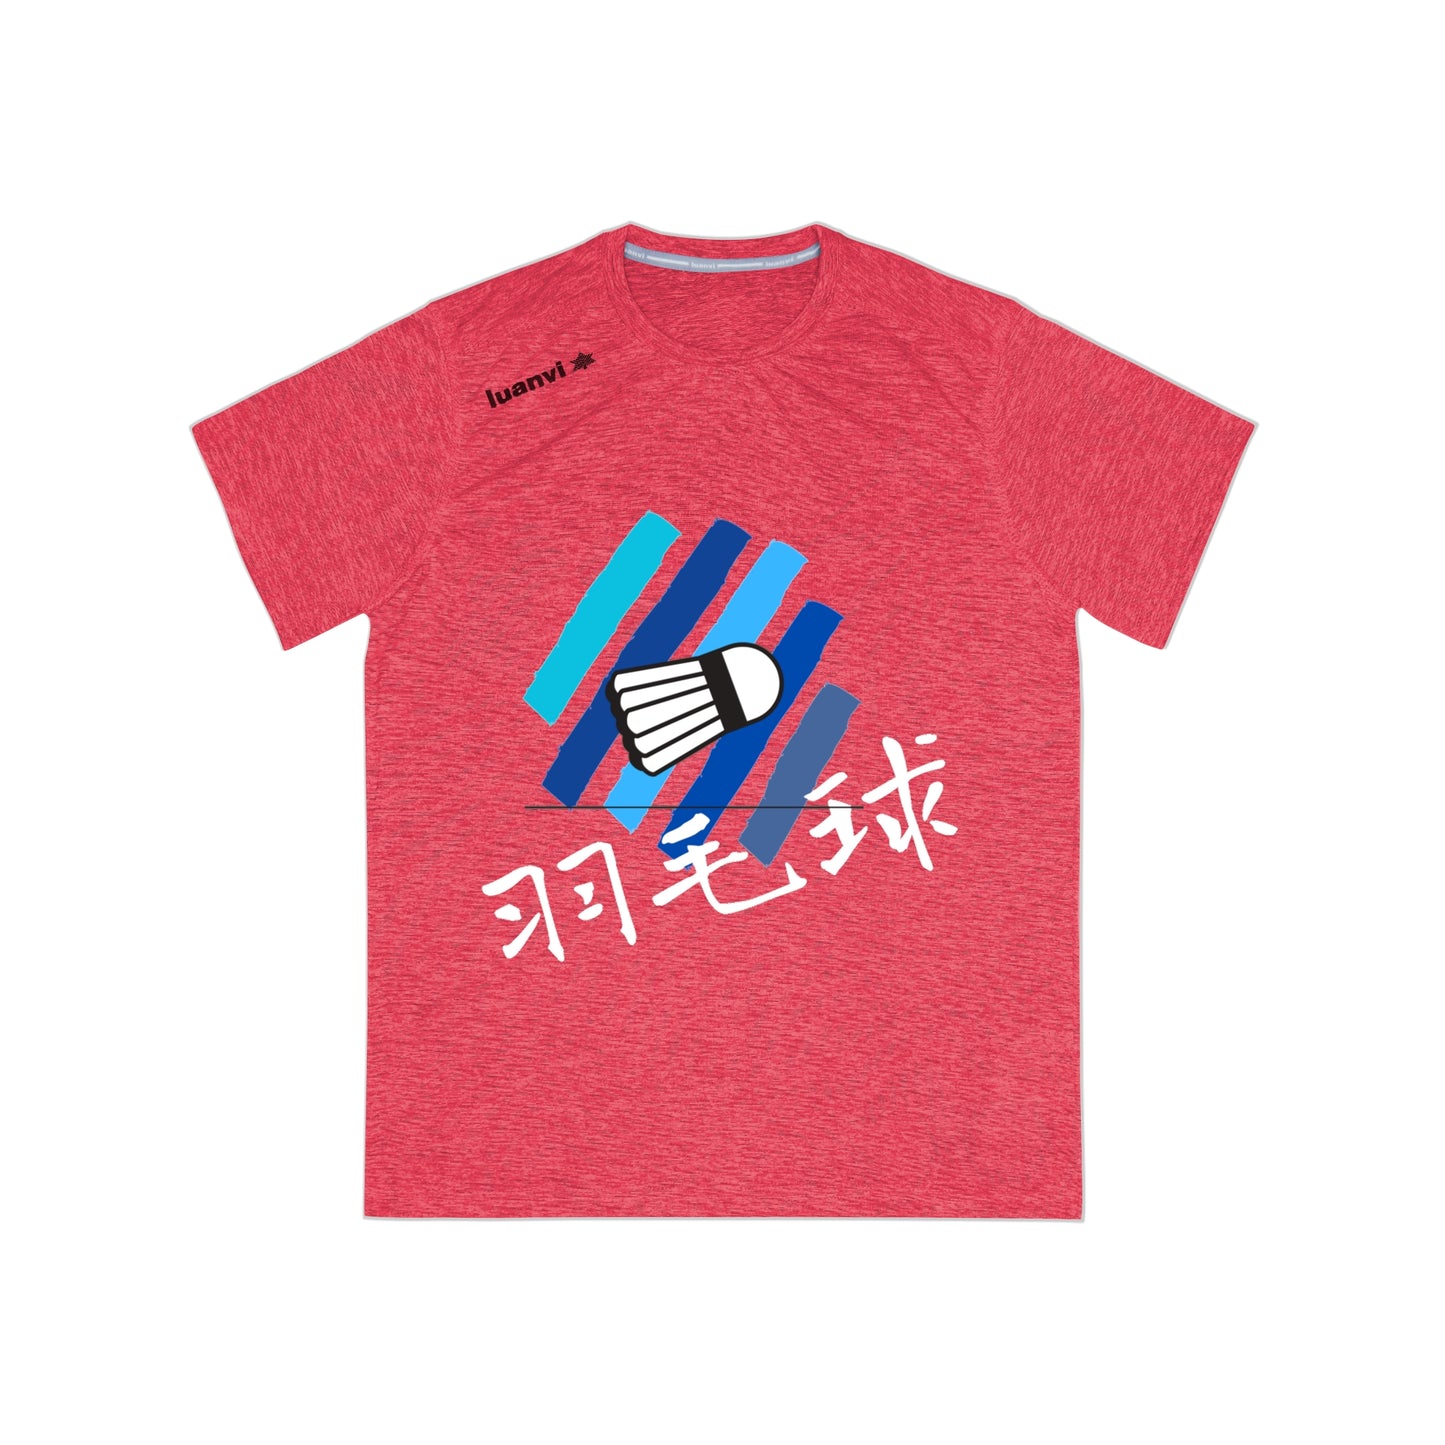 羽毛球 (Badminton in Chinese) Sports Shirt